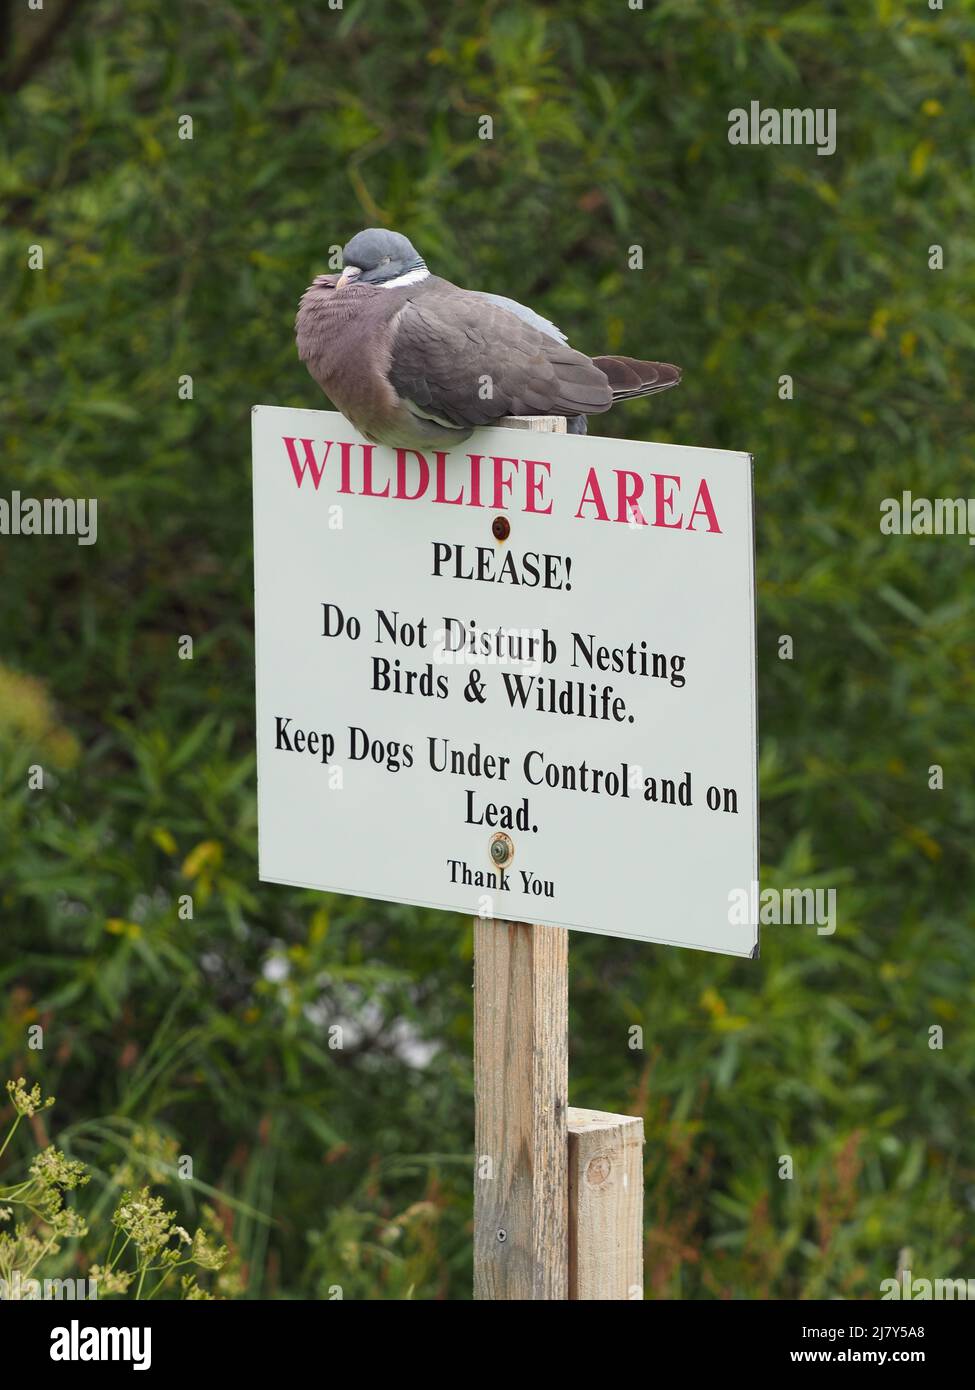 Pigeon legno comune che dorme su un cartello non disturbare la fauna selvatica, vicino a una riva del fiume. Alberi verdi e fogliame sullo sfondo. Foto Stock